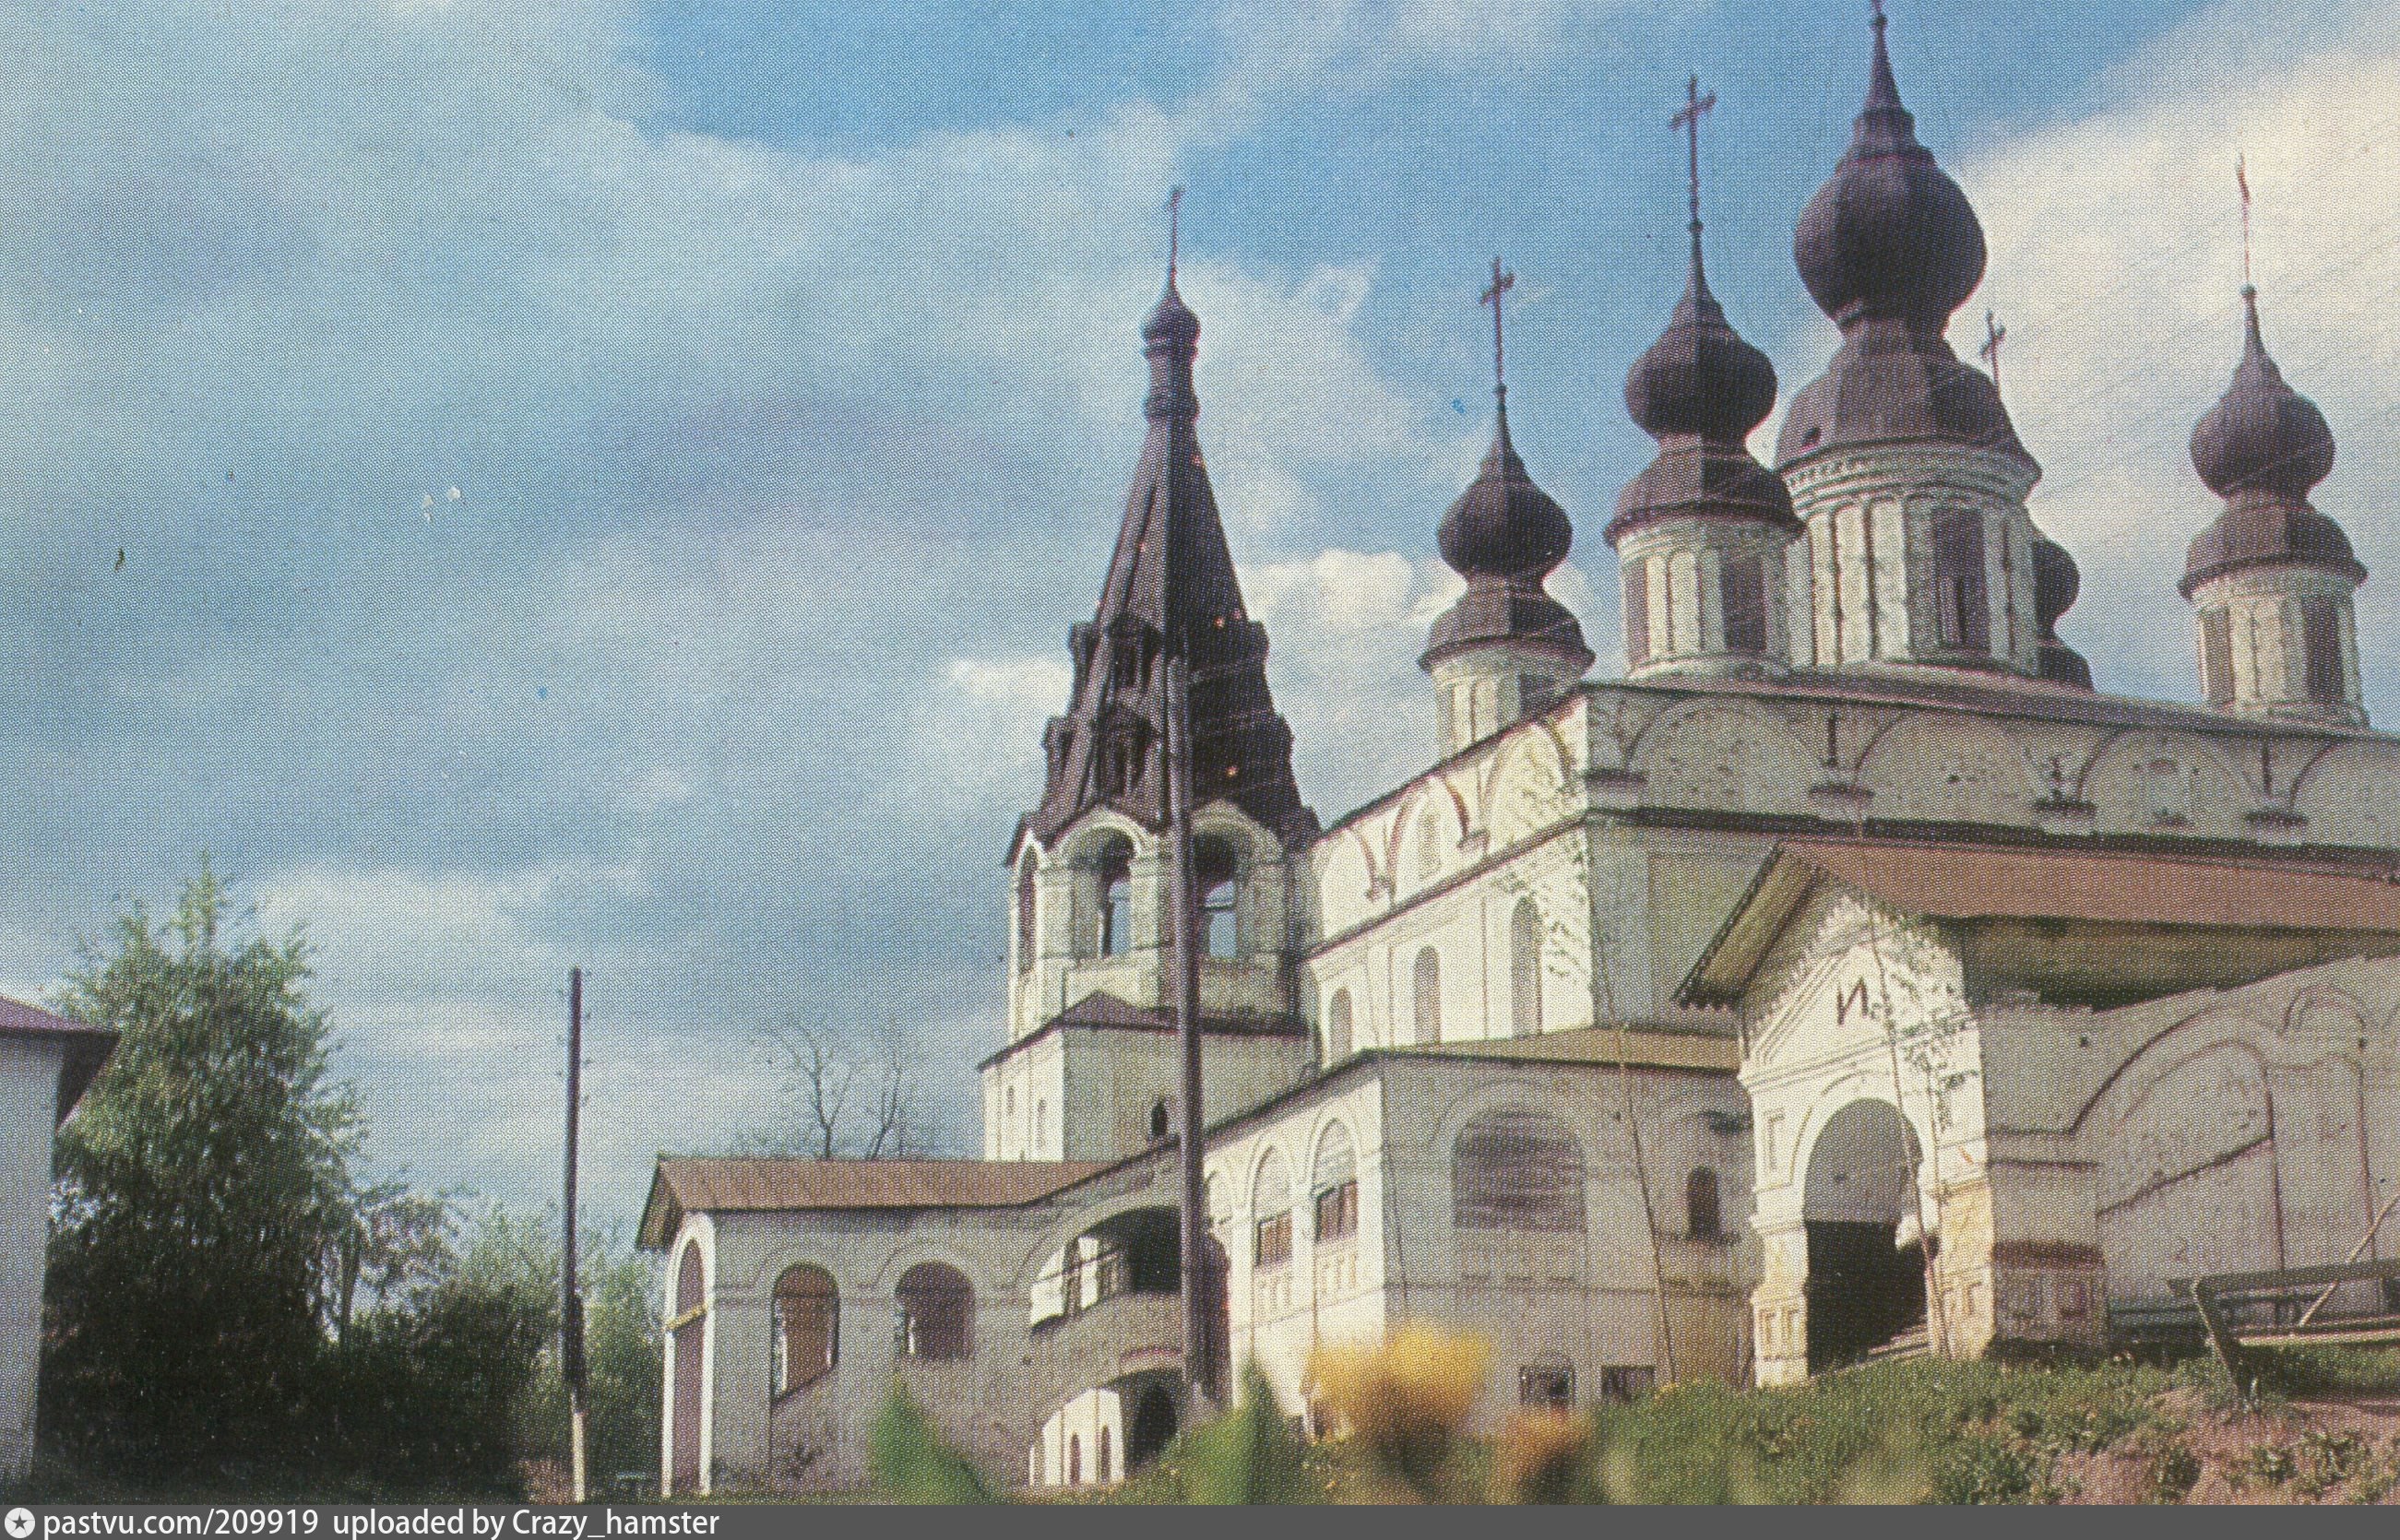 Михайло архангельский монастырь великий устюг фото